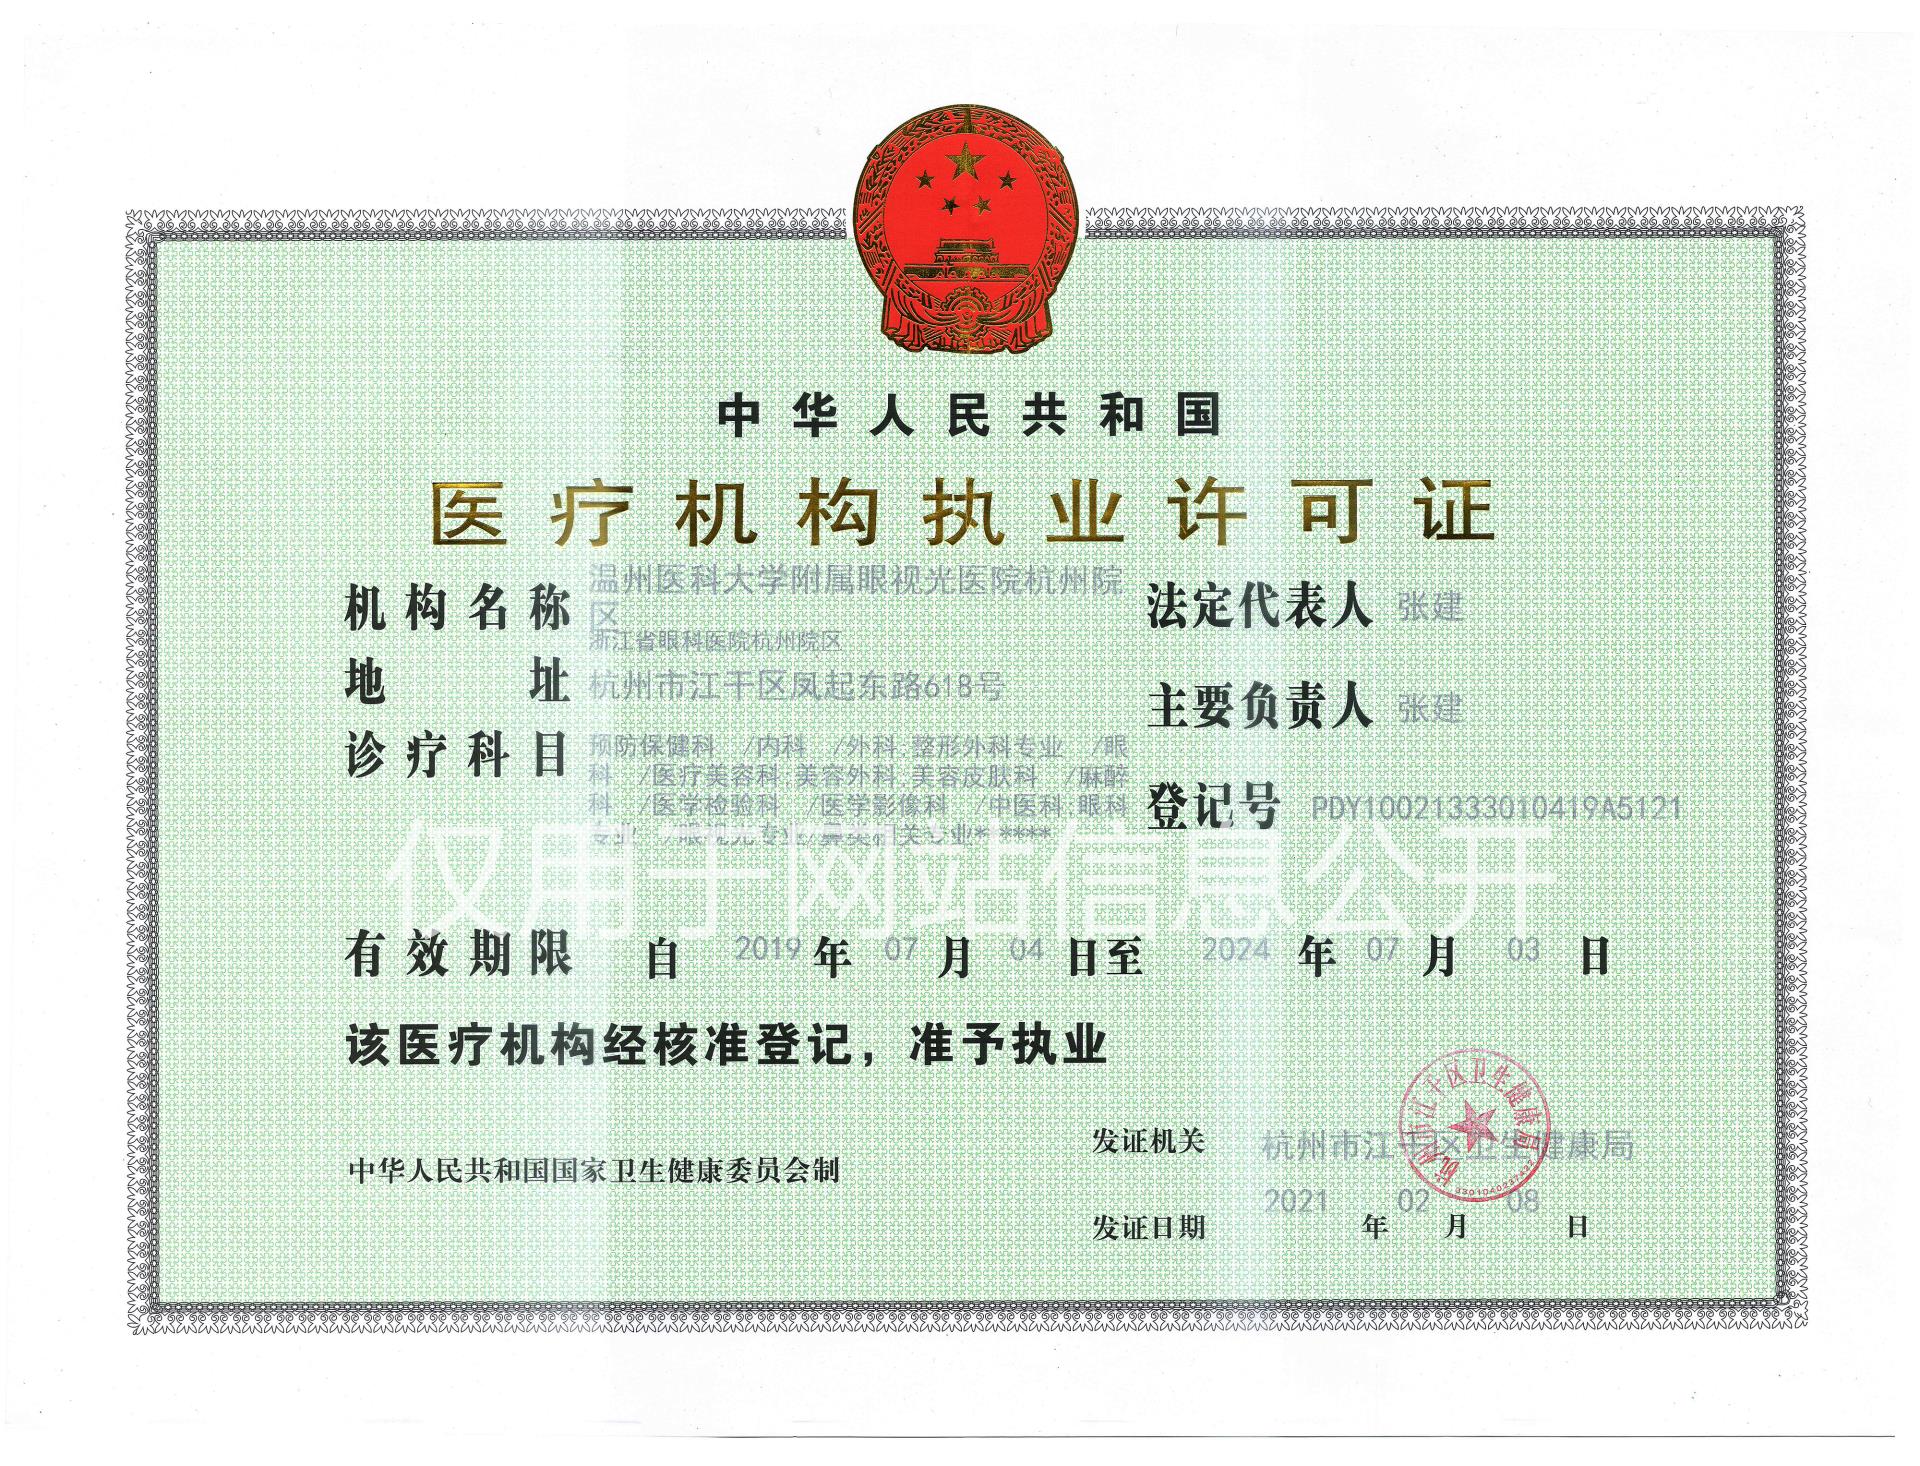 发证日期2021-2-8杭州院区-医疗机构执业许可证v3.jpg